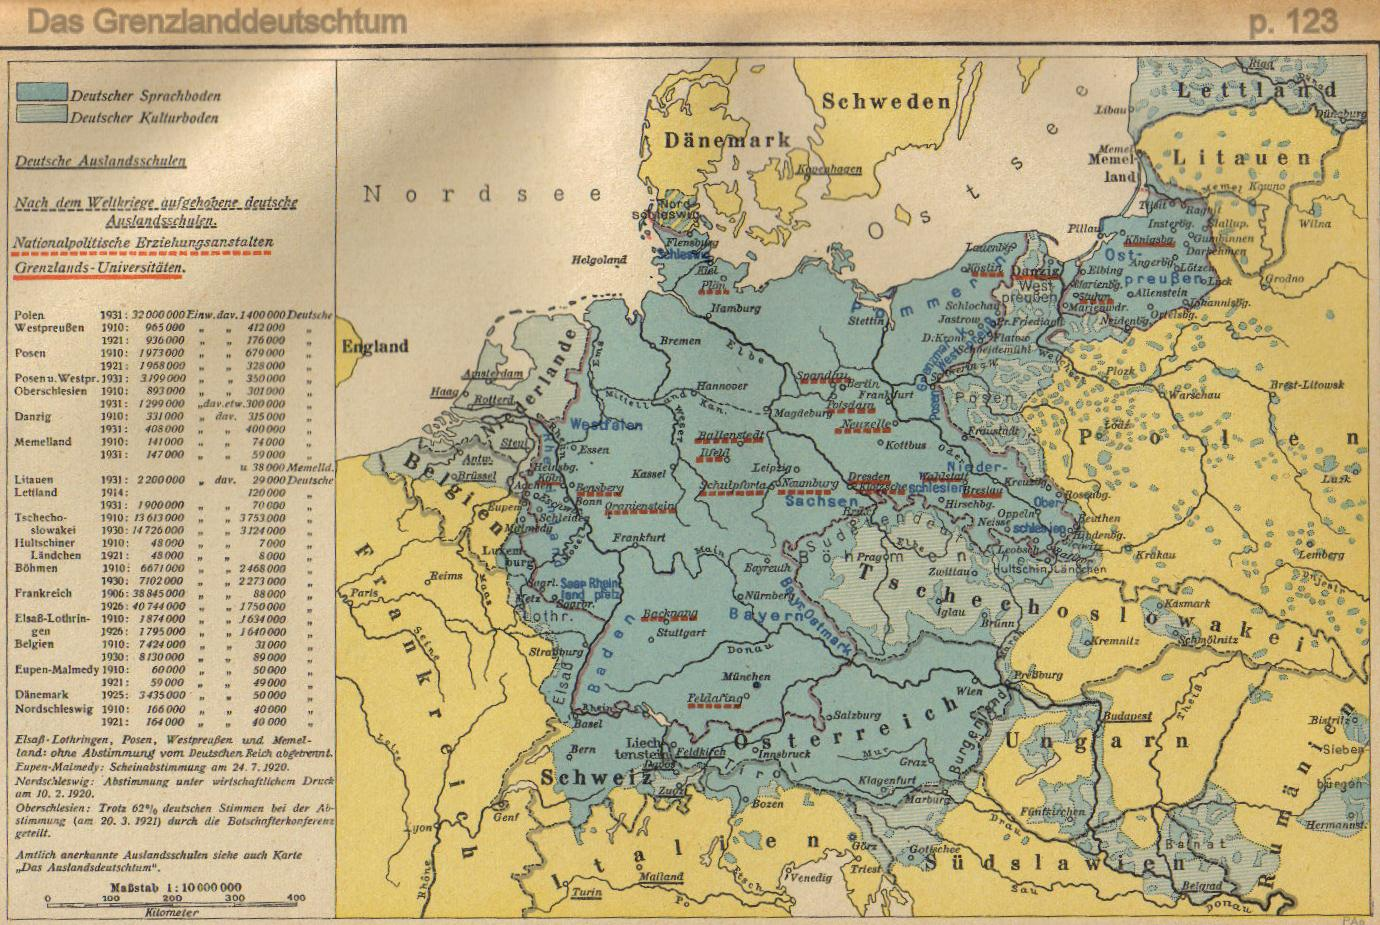 Kaart 2: Die verspreiding van Duits volksgebiede in Europa in 1938.